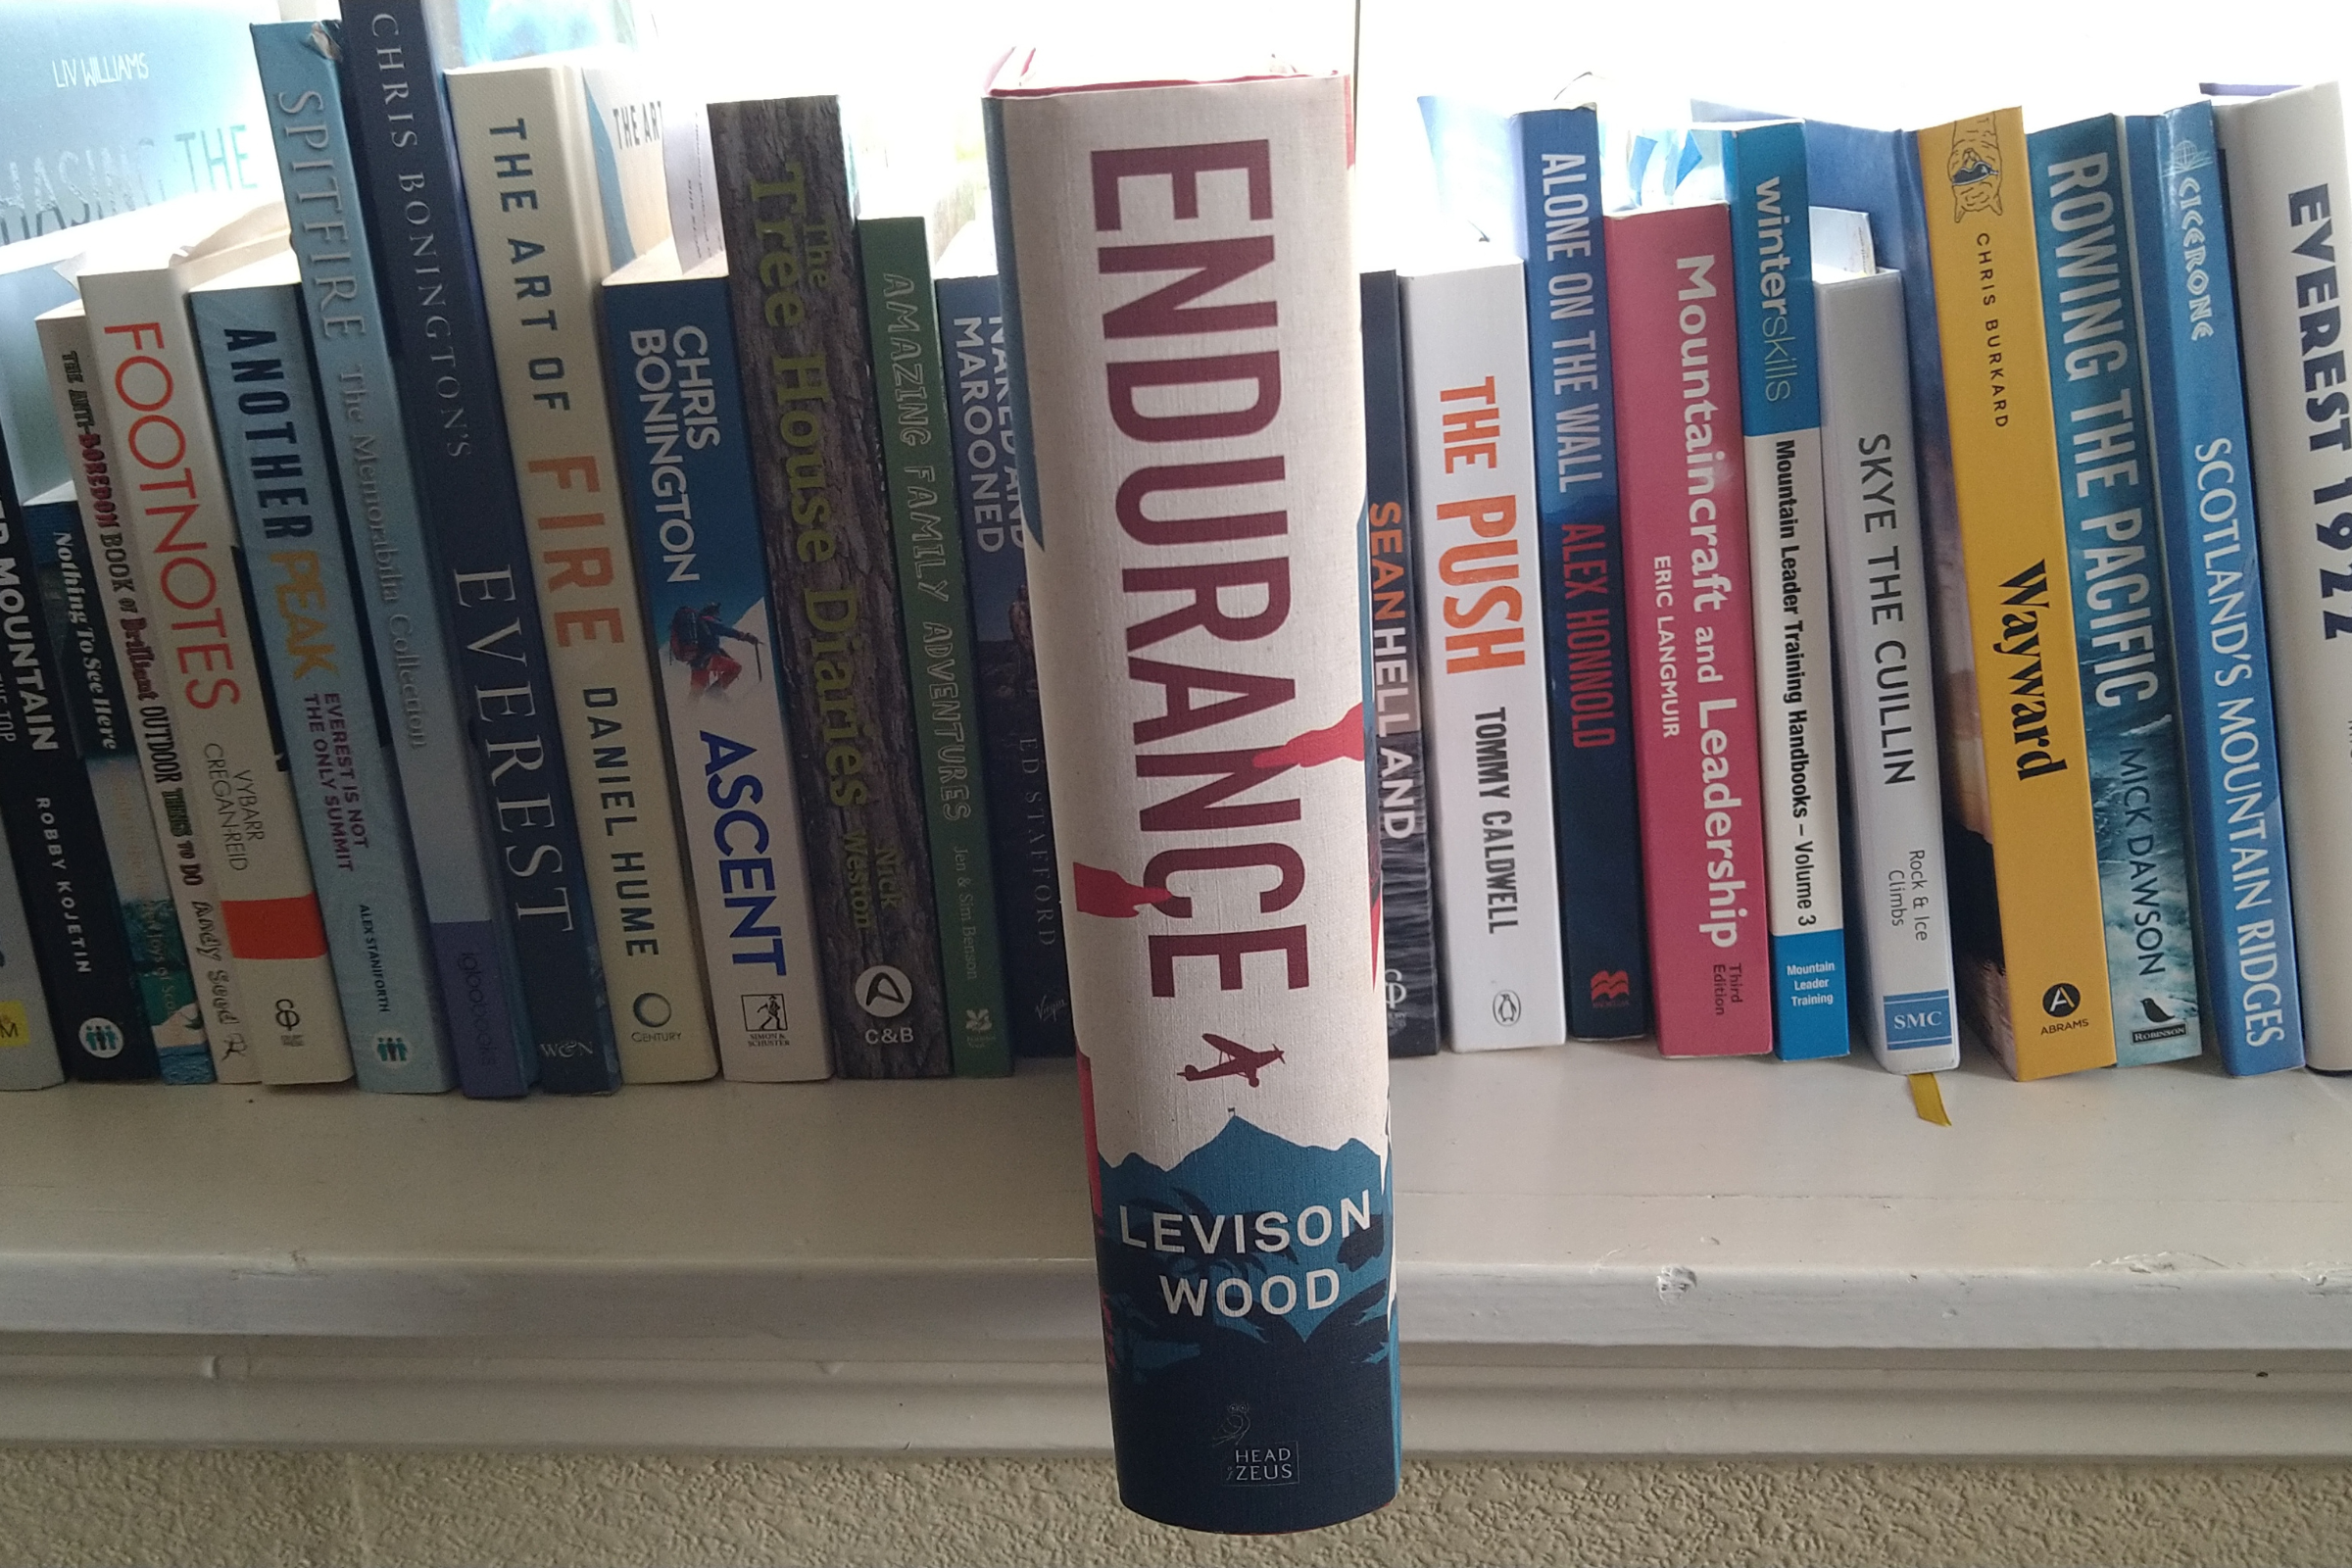 Levison Wood’s book ‘Endurance’ details 100 best adventure stories